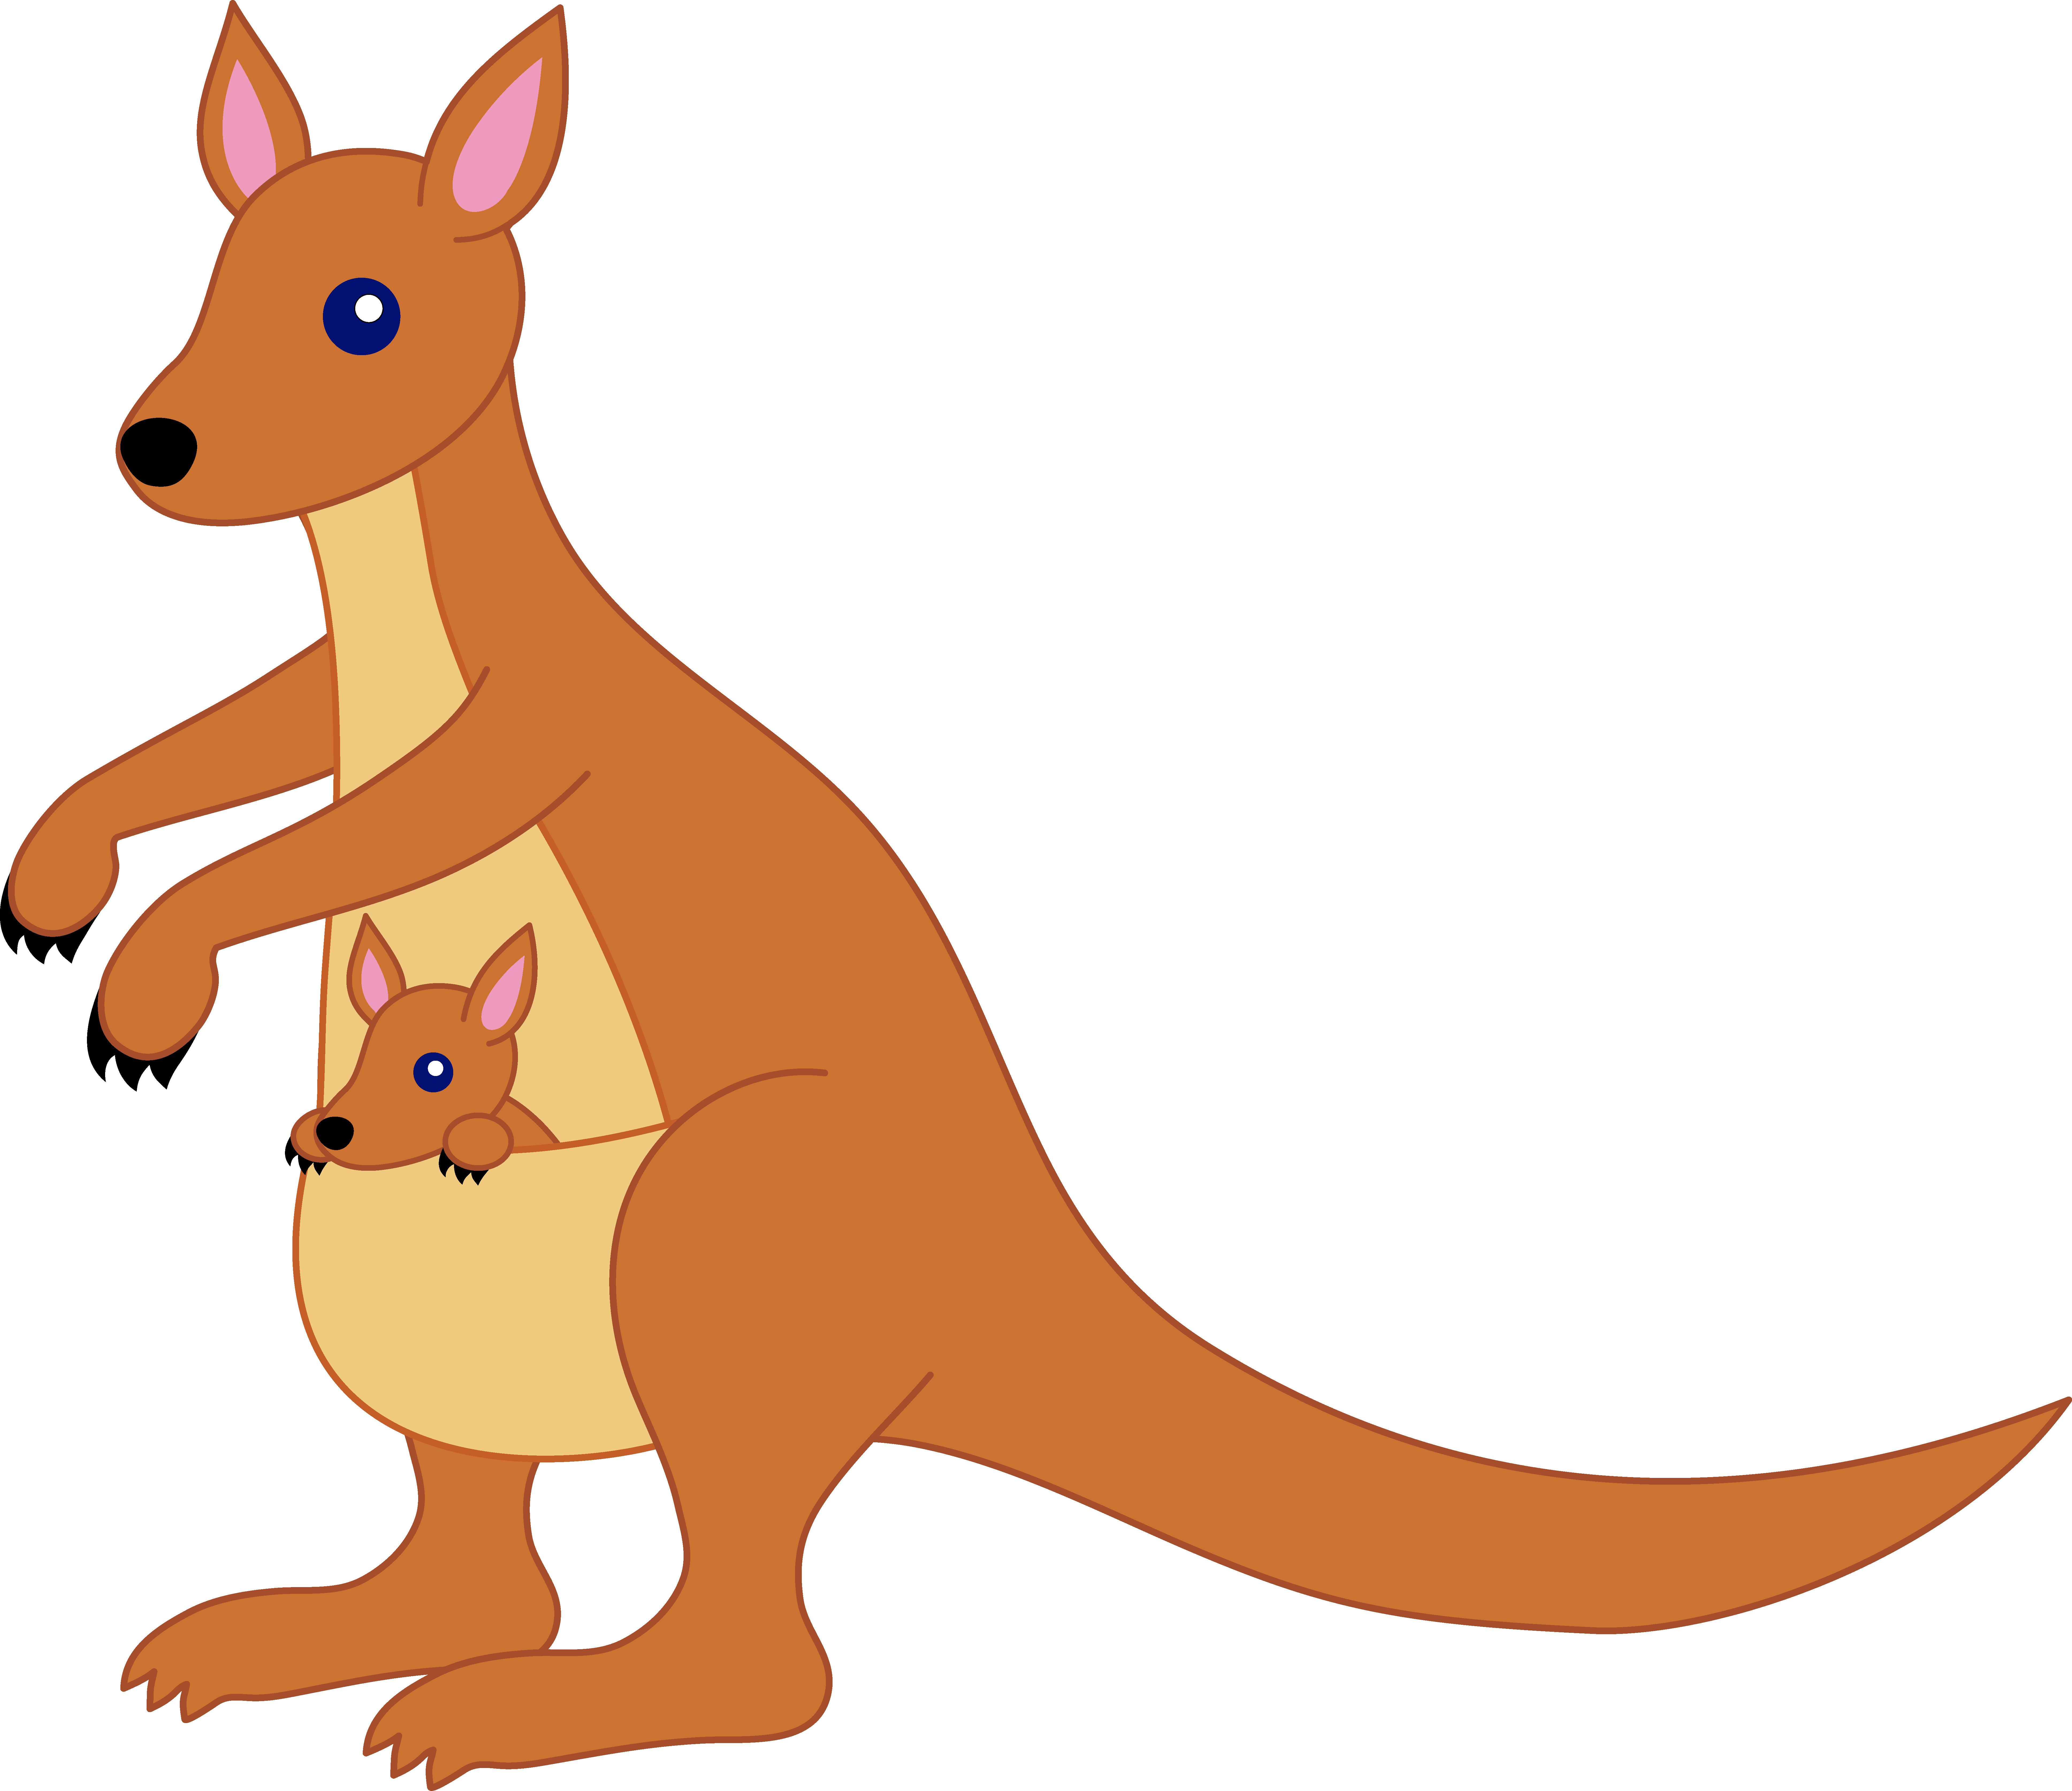 Marsupial clipart #2, Download drawings